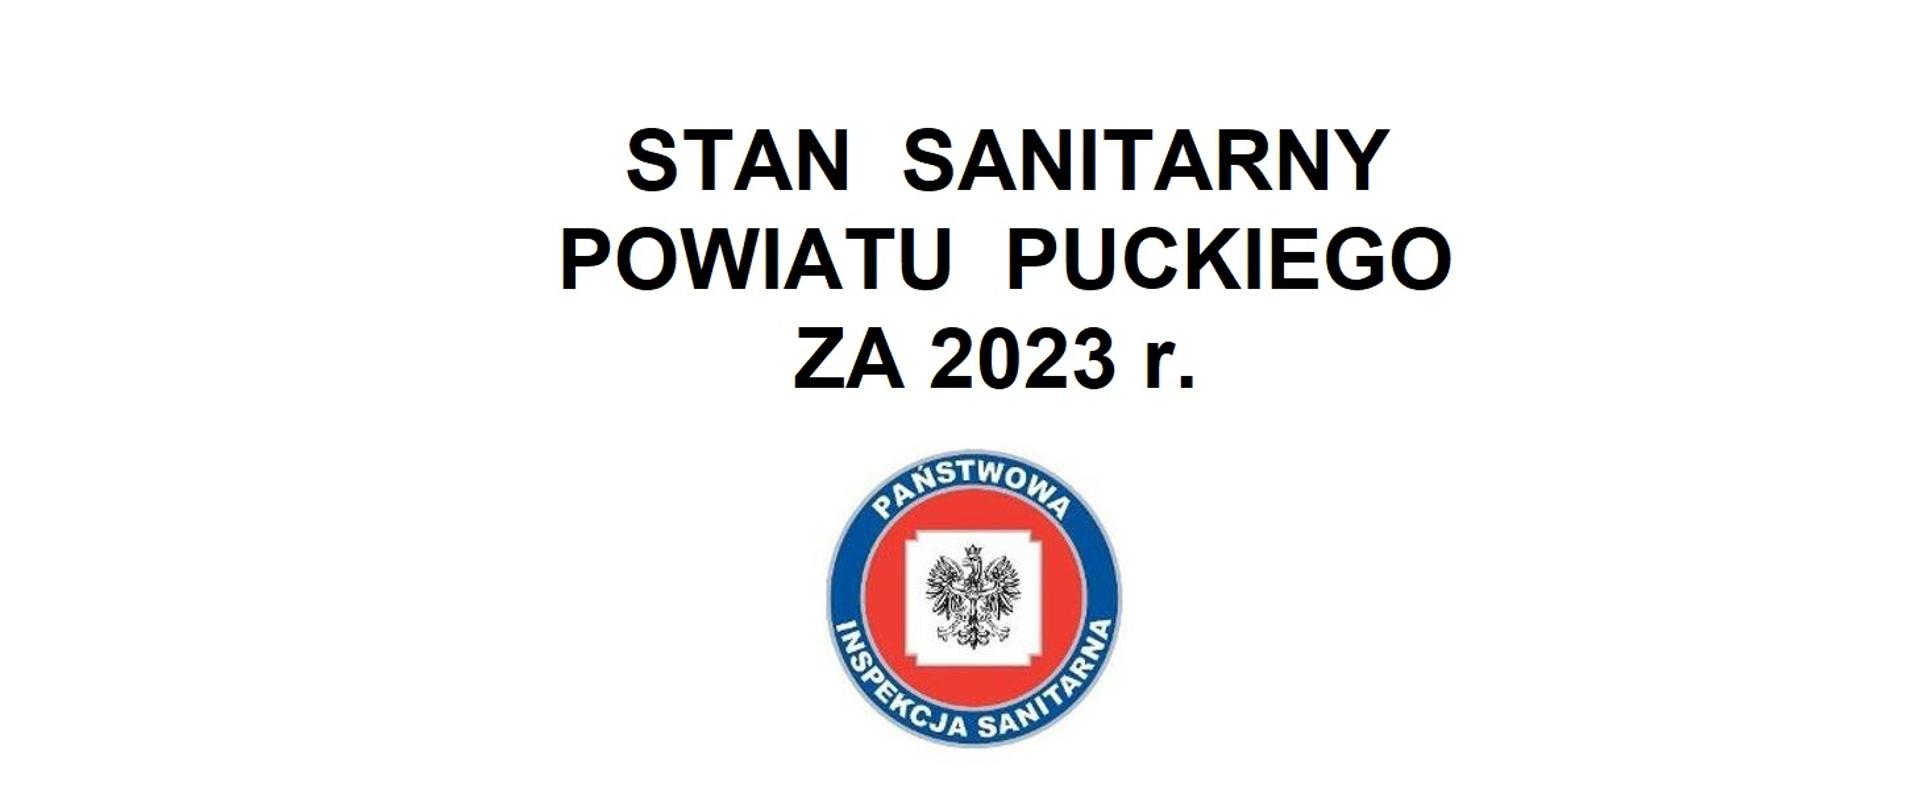 Stan sanitarny powiatu puckiego za 2023 r. 